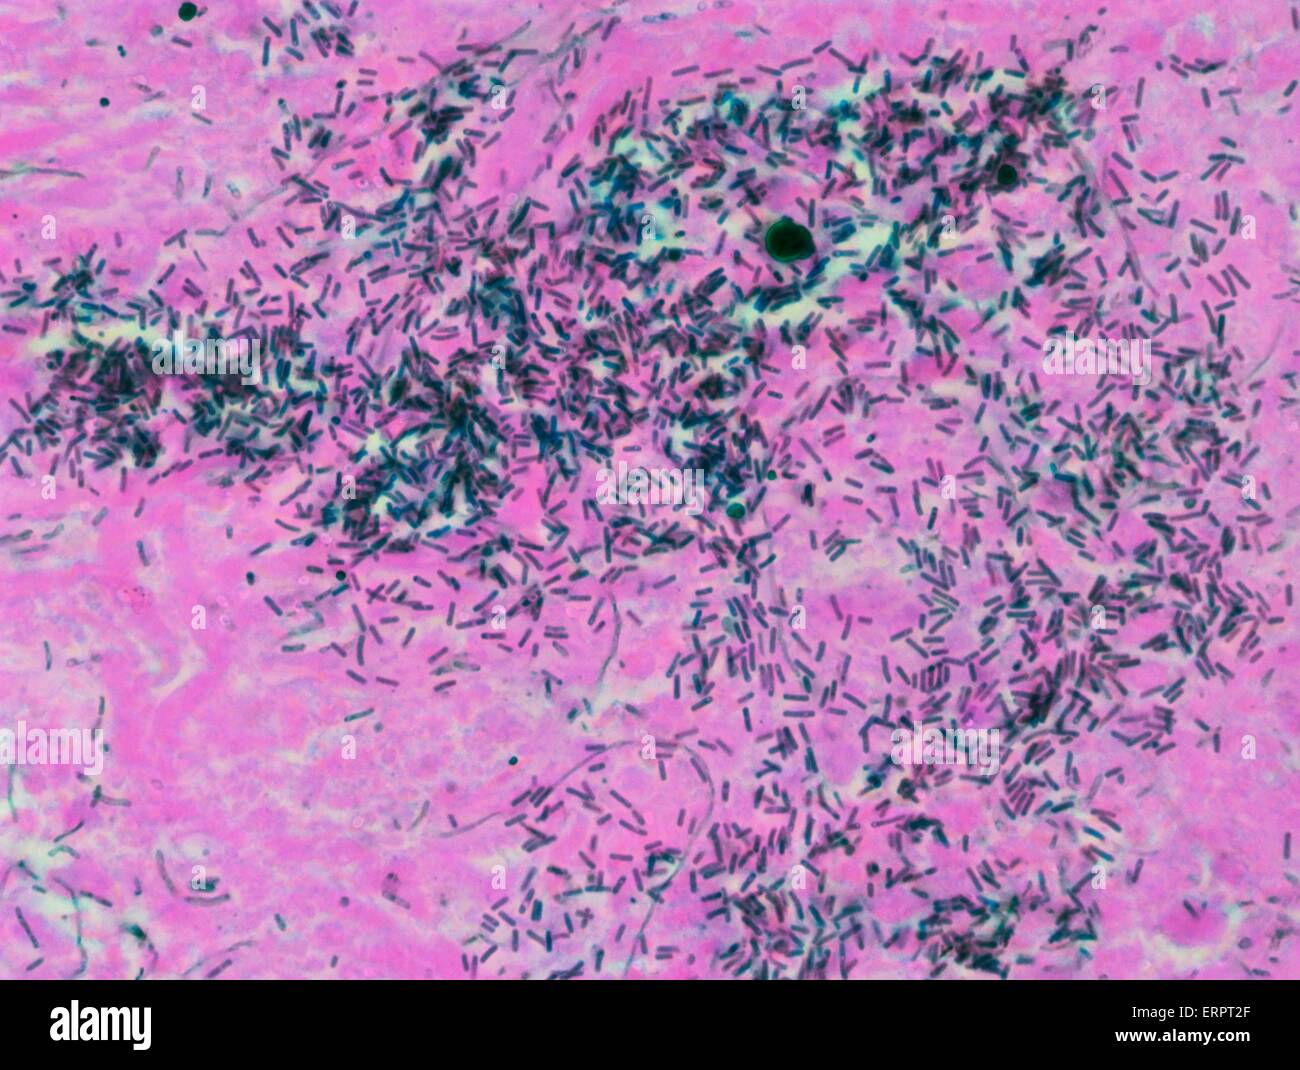 Ulcerosa. Leichte Schliffbild (LM) eines Teils der bakteriellen Invasion des menschlichen Darms Wand. Colitis ist eine lebensbedrohliche Komplikation der aplastischen Anämie, die in Zeiten der tiefen Neutropenie (eine niedrige Neutrophilen Leukozytenzahl) auftritt, wodurch Stockfoto